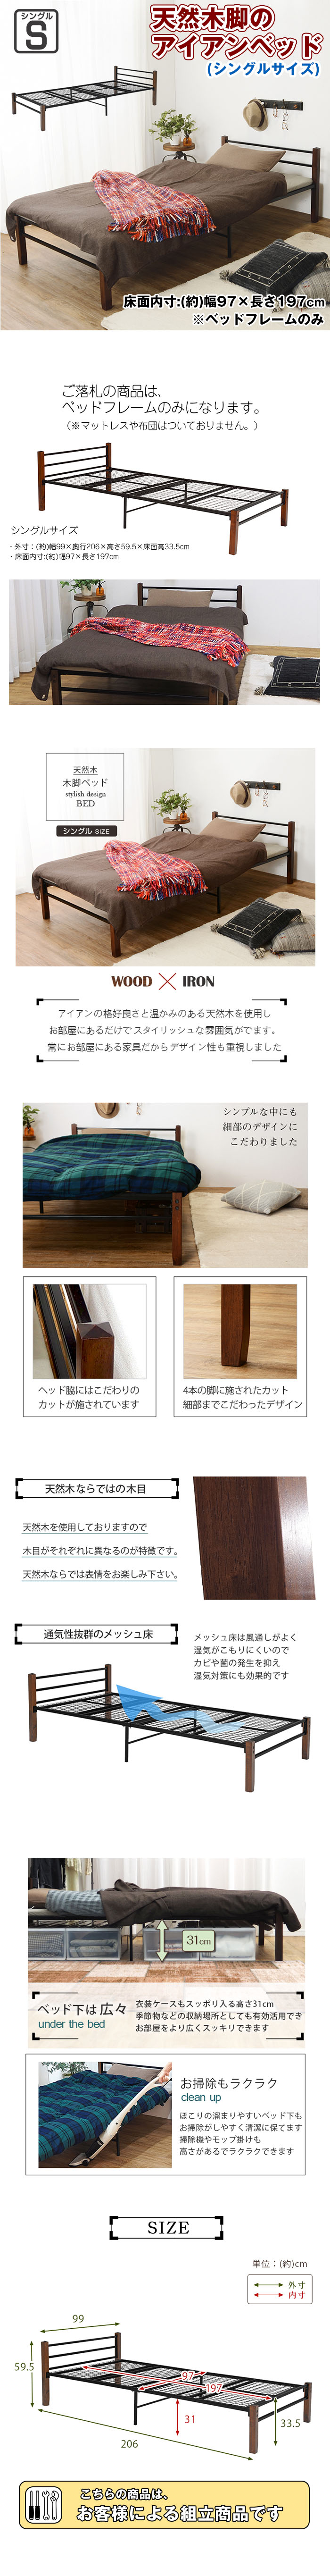 正規品豊富な天然木 木脚 アイアンベッド シングルベッド (ベッドフレームのみ) メッシュ パイプベッド ローベッド 涼しい ベッド 子供 フレームのみ